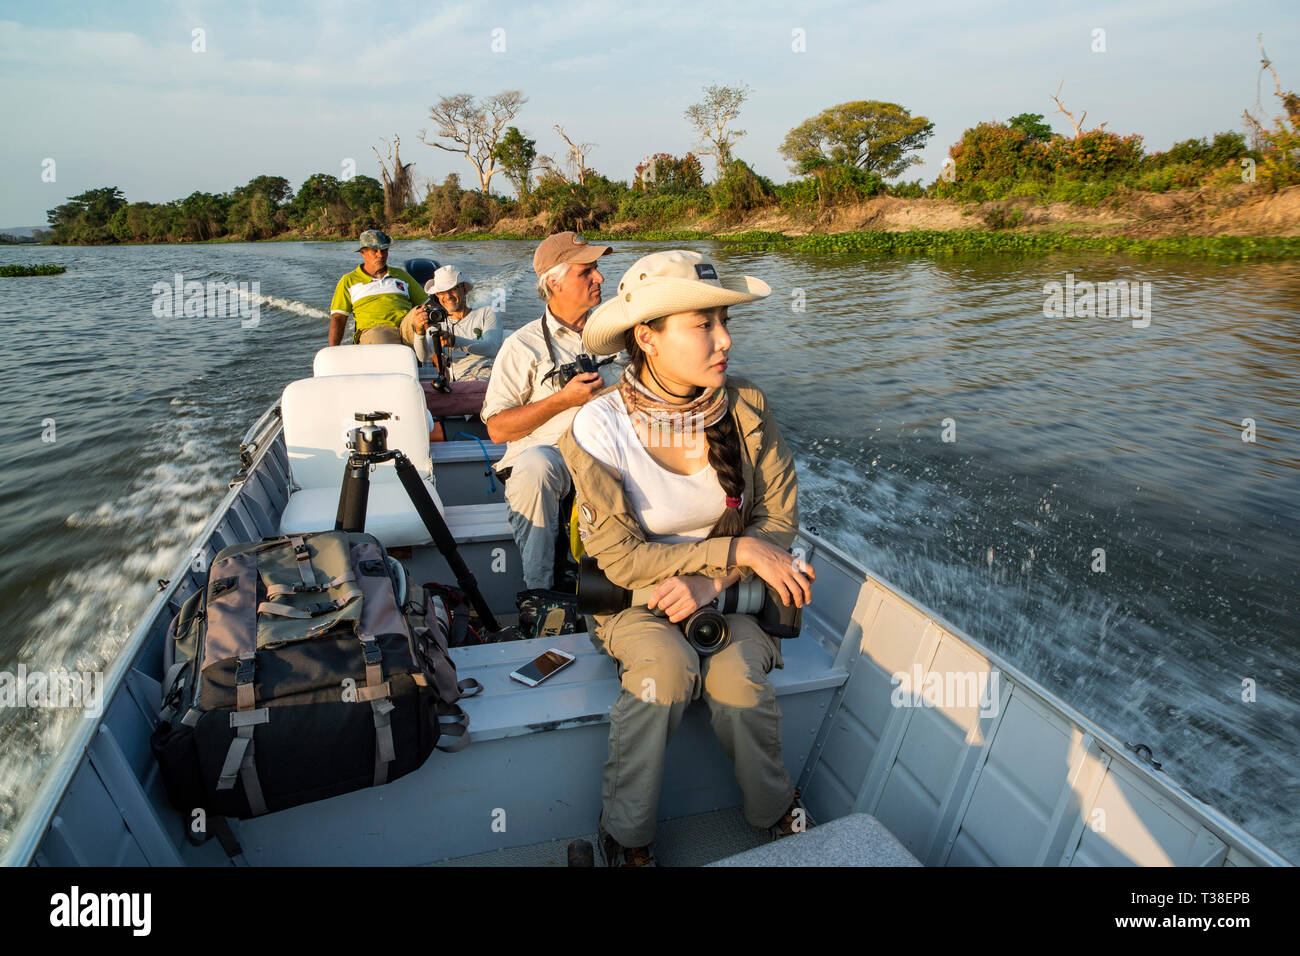 Turisti che si godono le zone umide, Paraguay River, Pantanal, Brasile Foto Stock